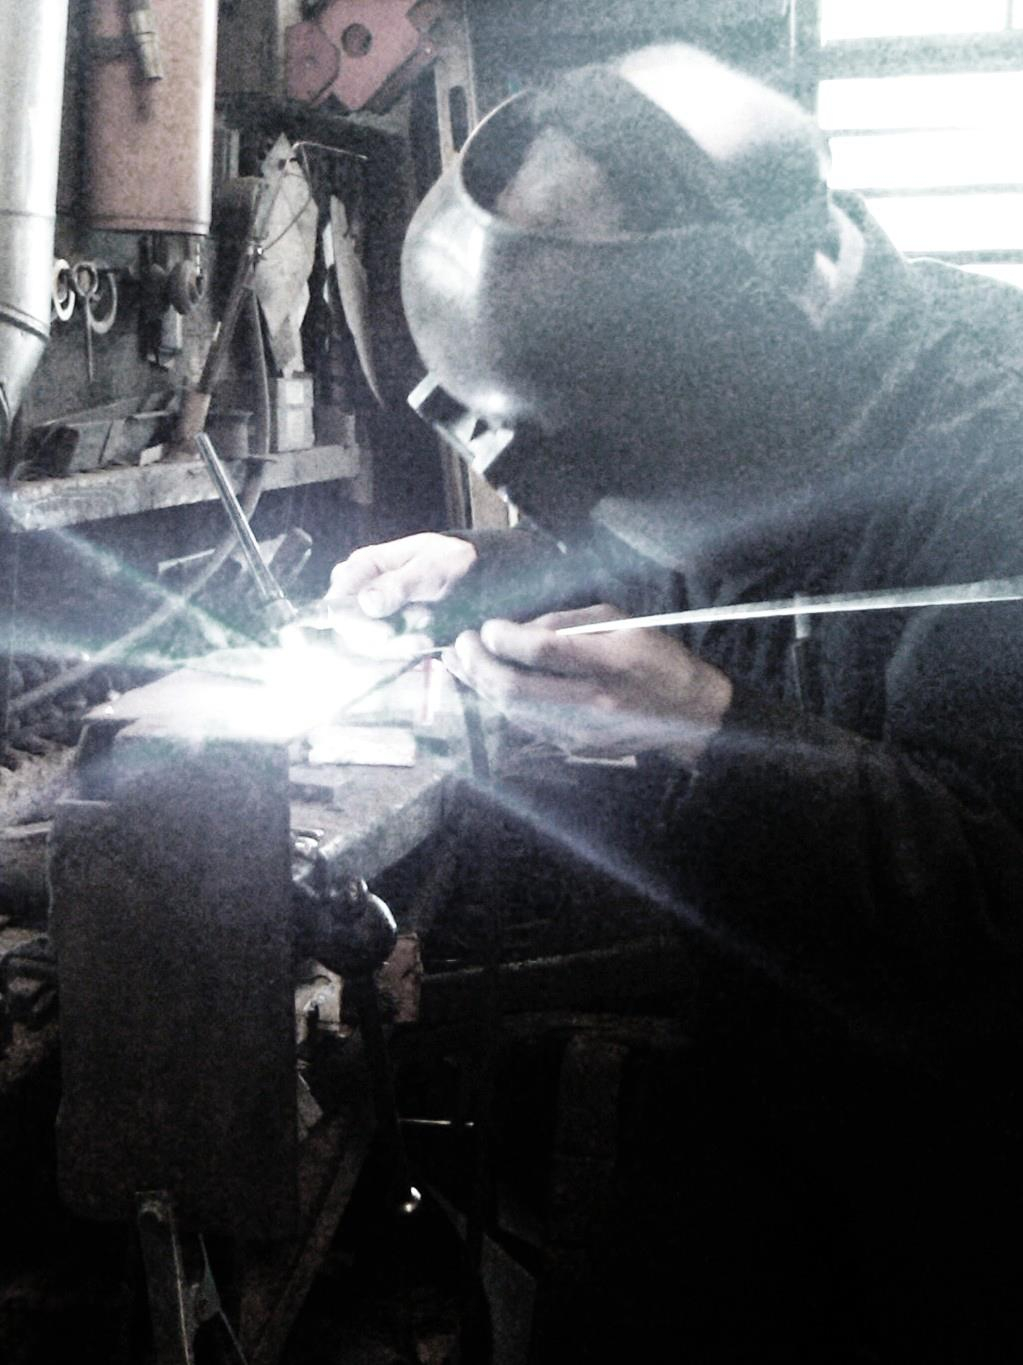 a man welding in a shop 